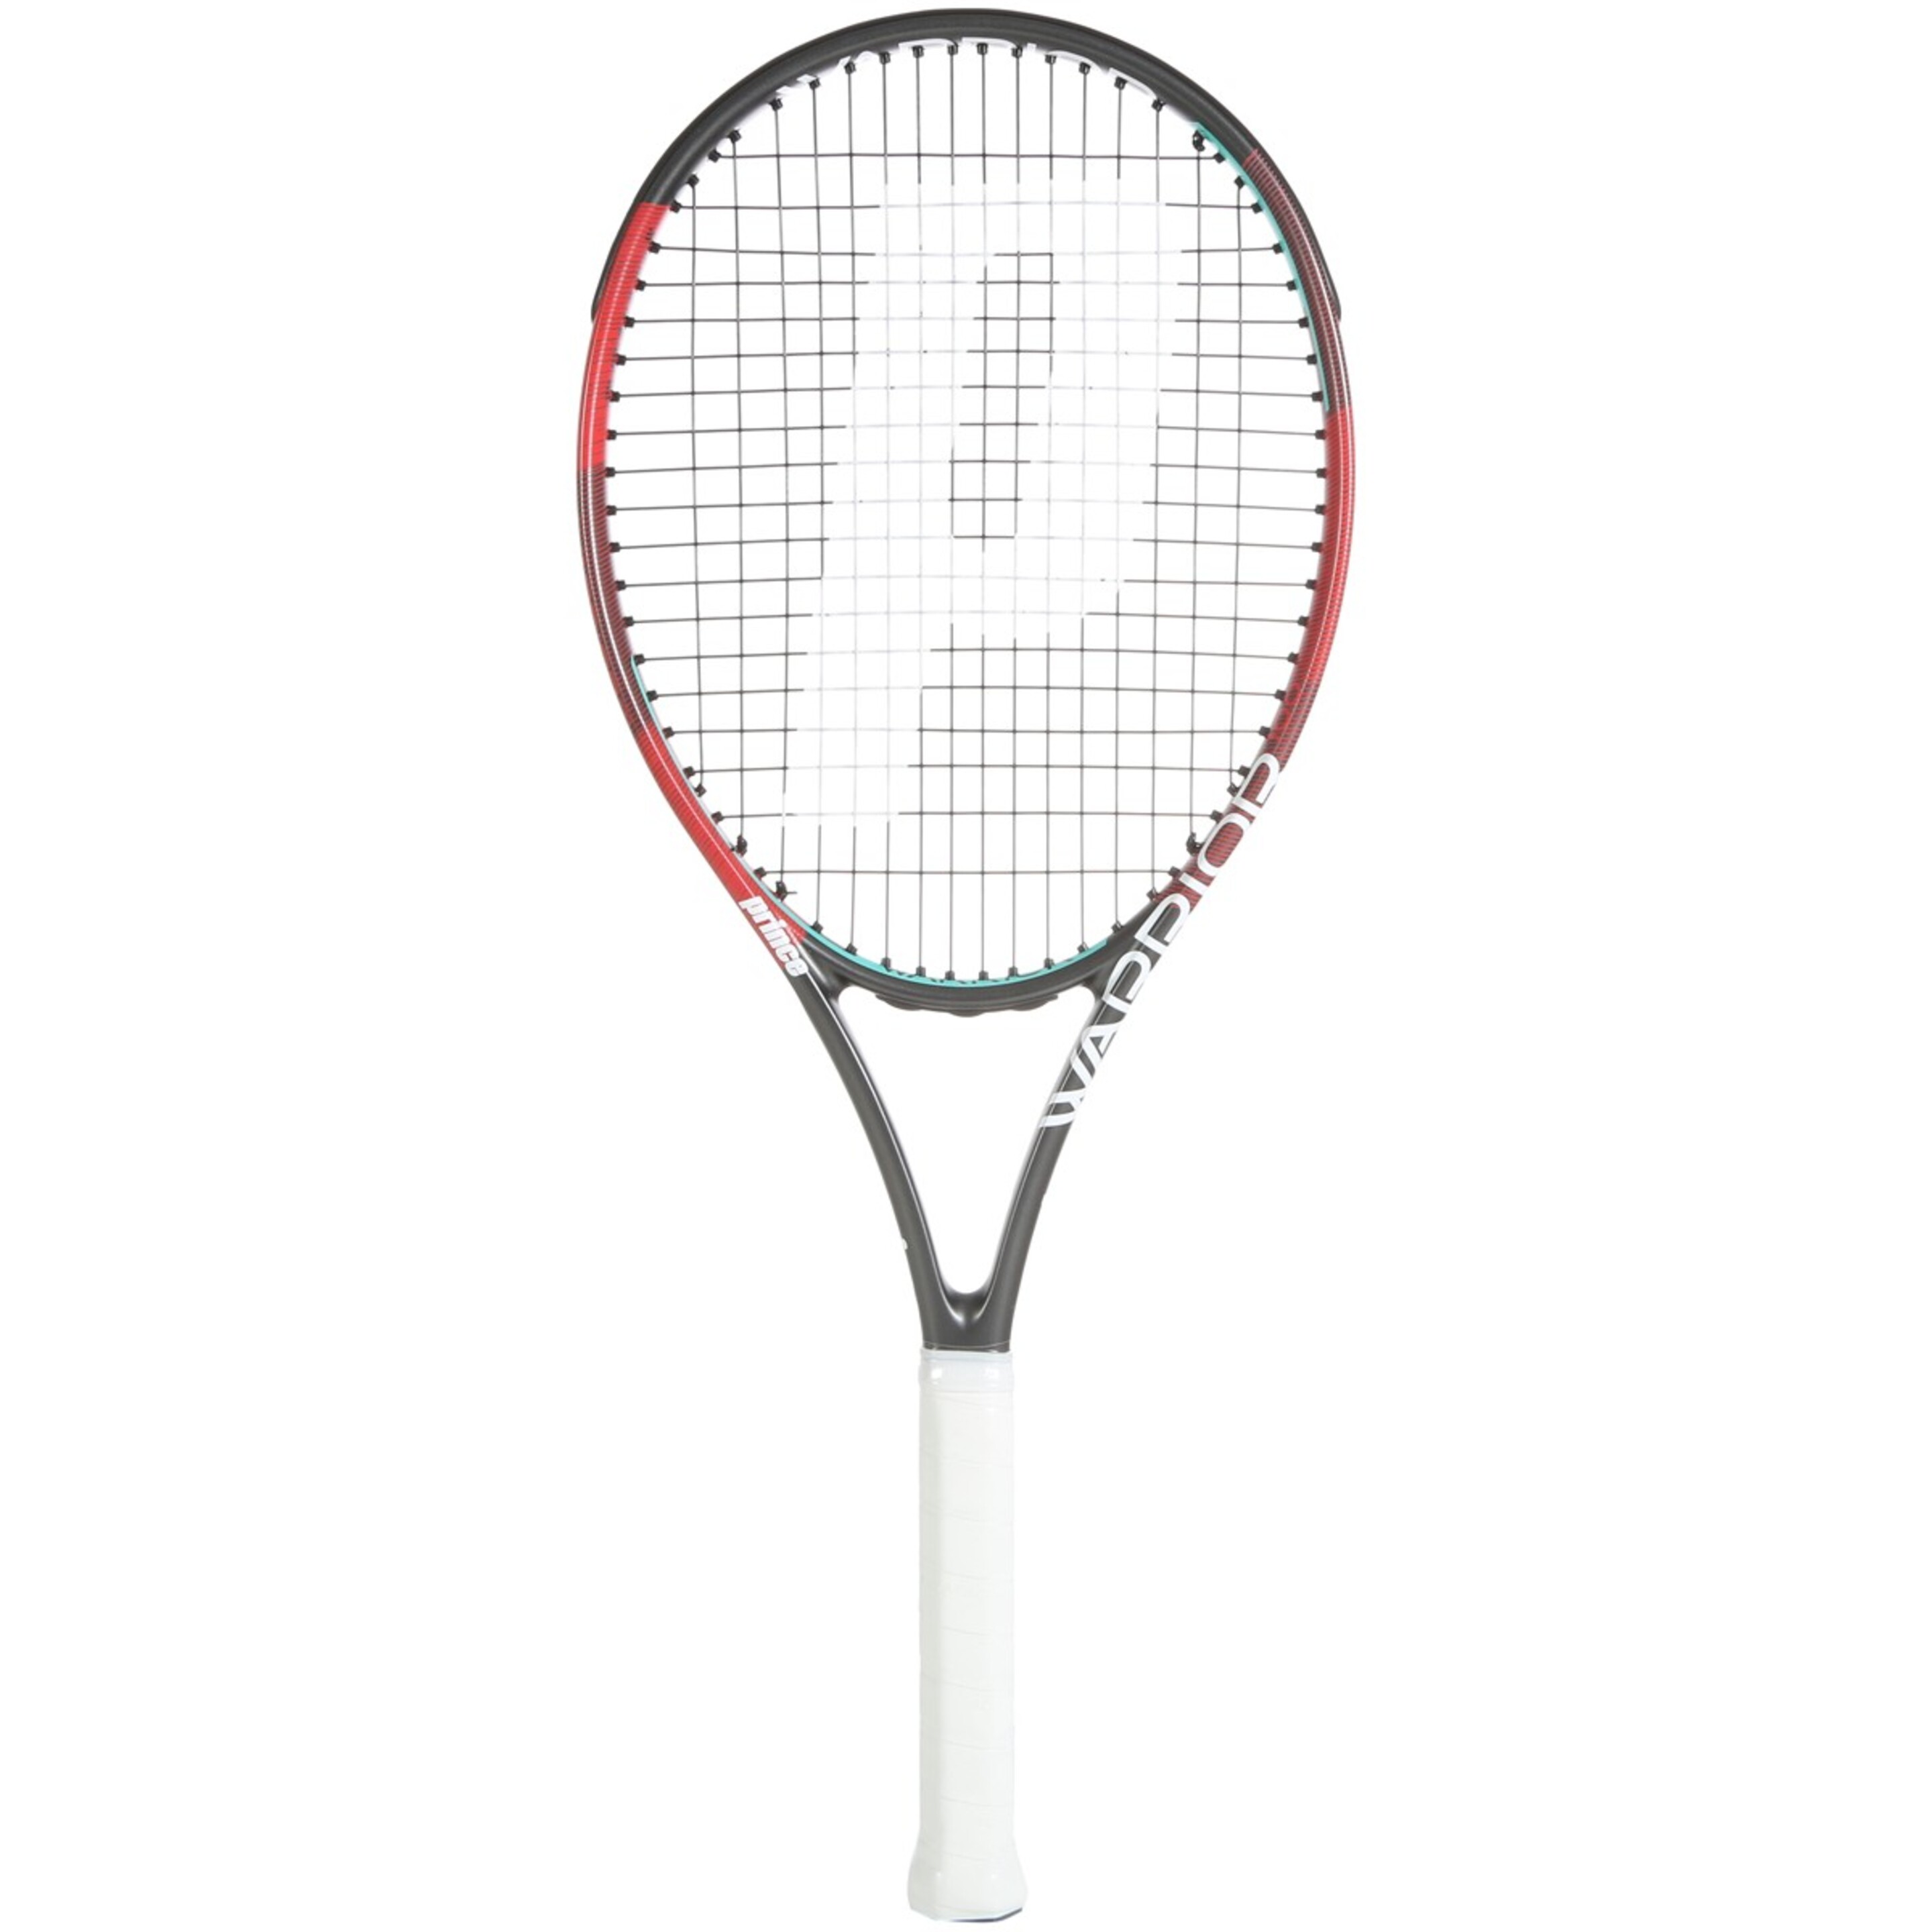 Raqueta De Tenis Prince Warrior 100 285 G (encordada Y Con Funda) - negro-rojo - 